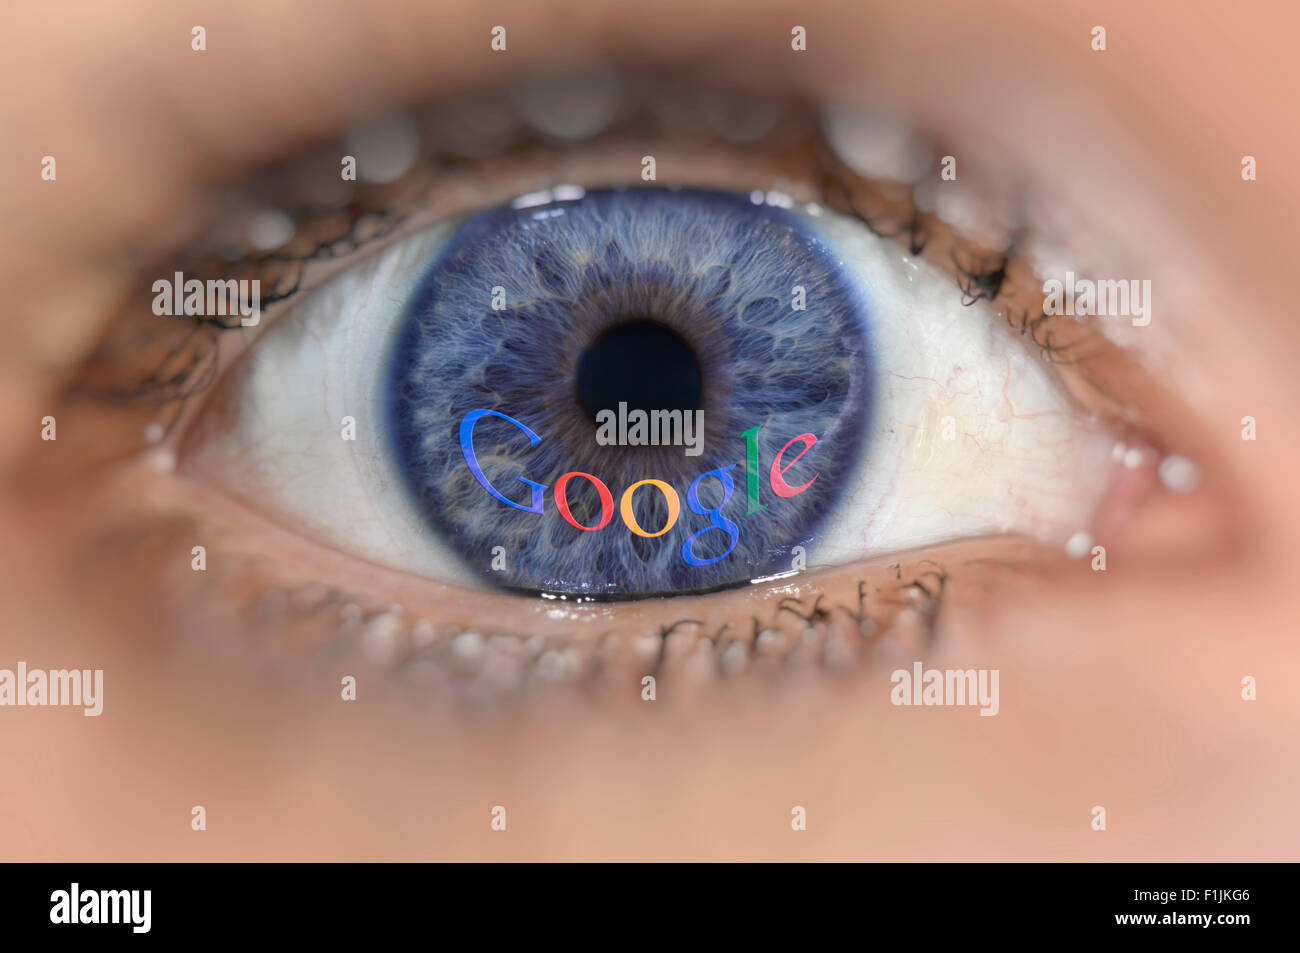 Blue Eye avec le logo Google sur iris, image symbolique, la sécurité des données Banque D'Images